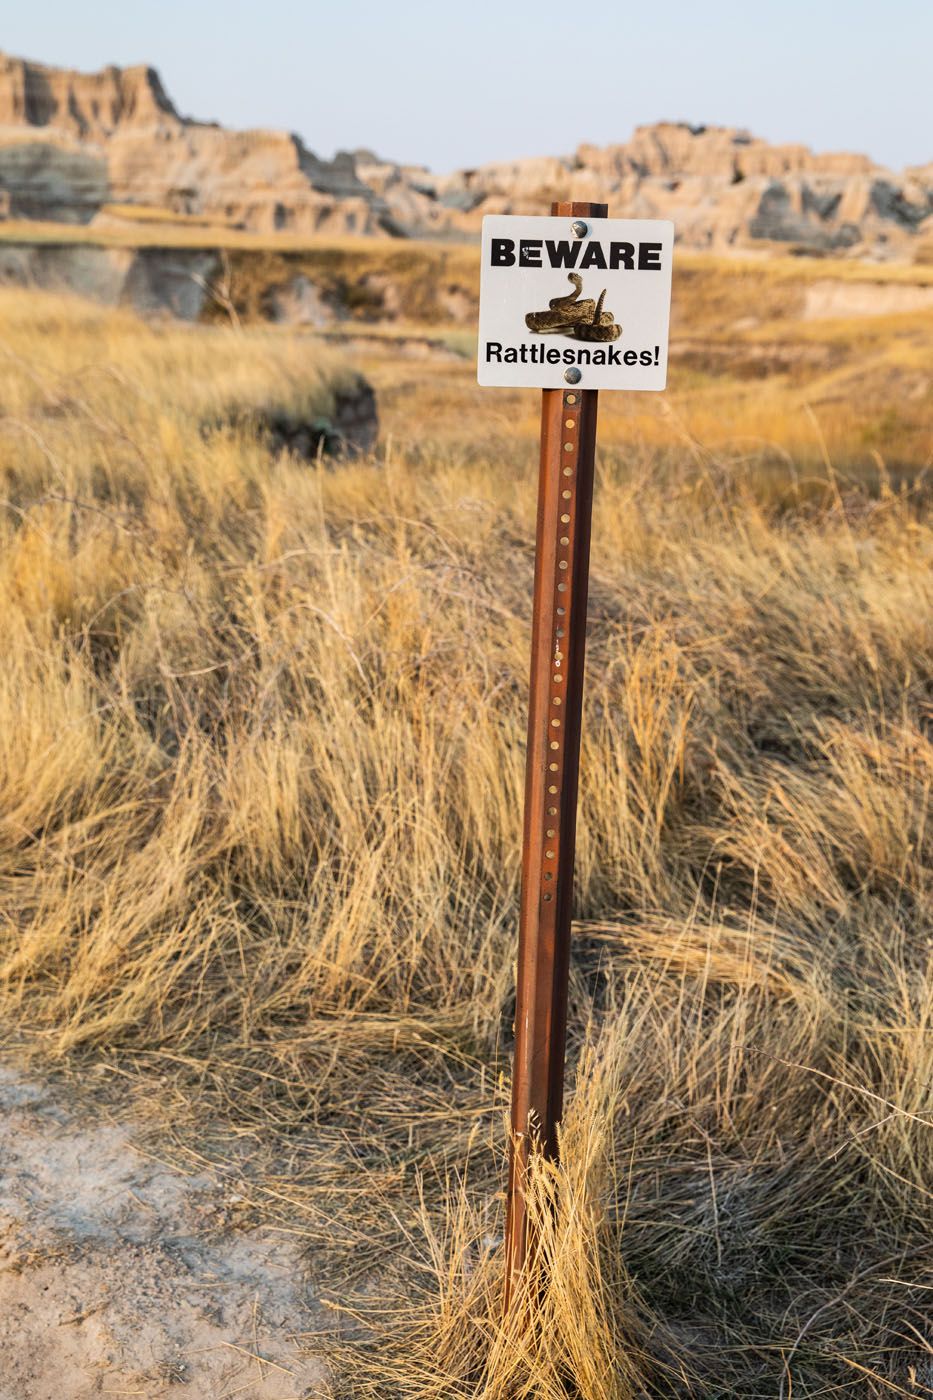 Beware of Rattlesnakes